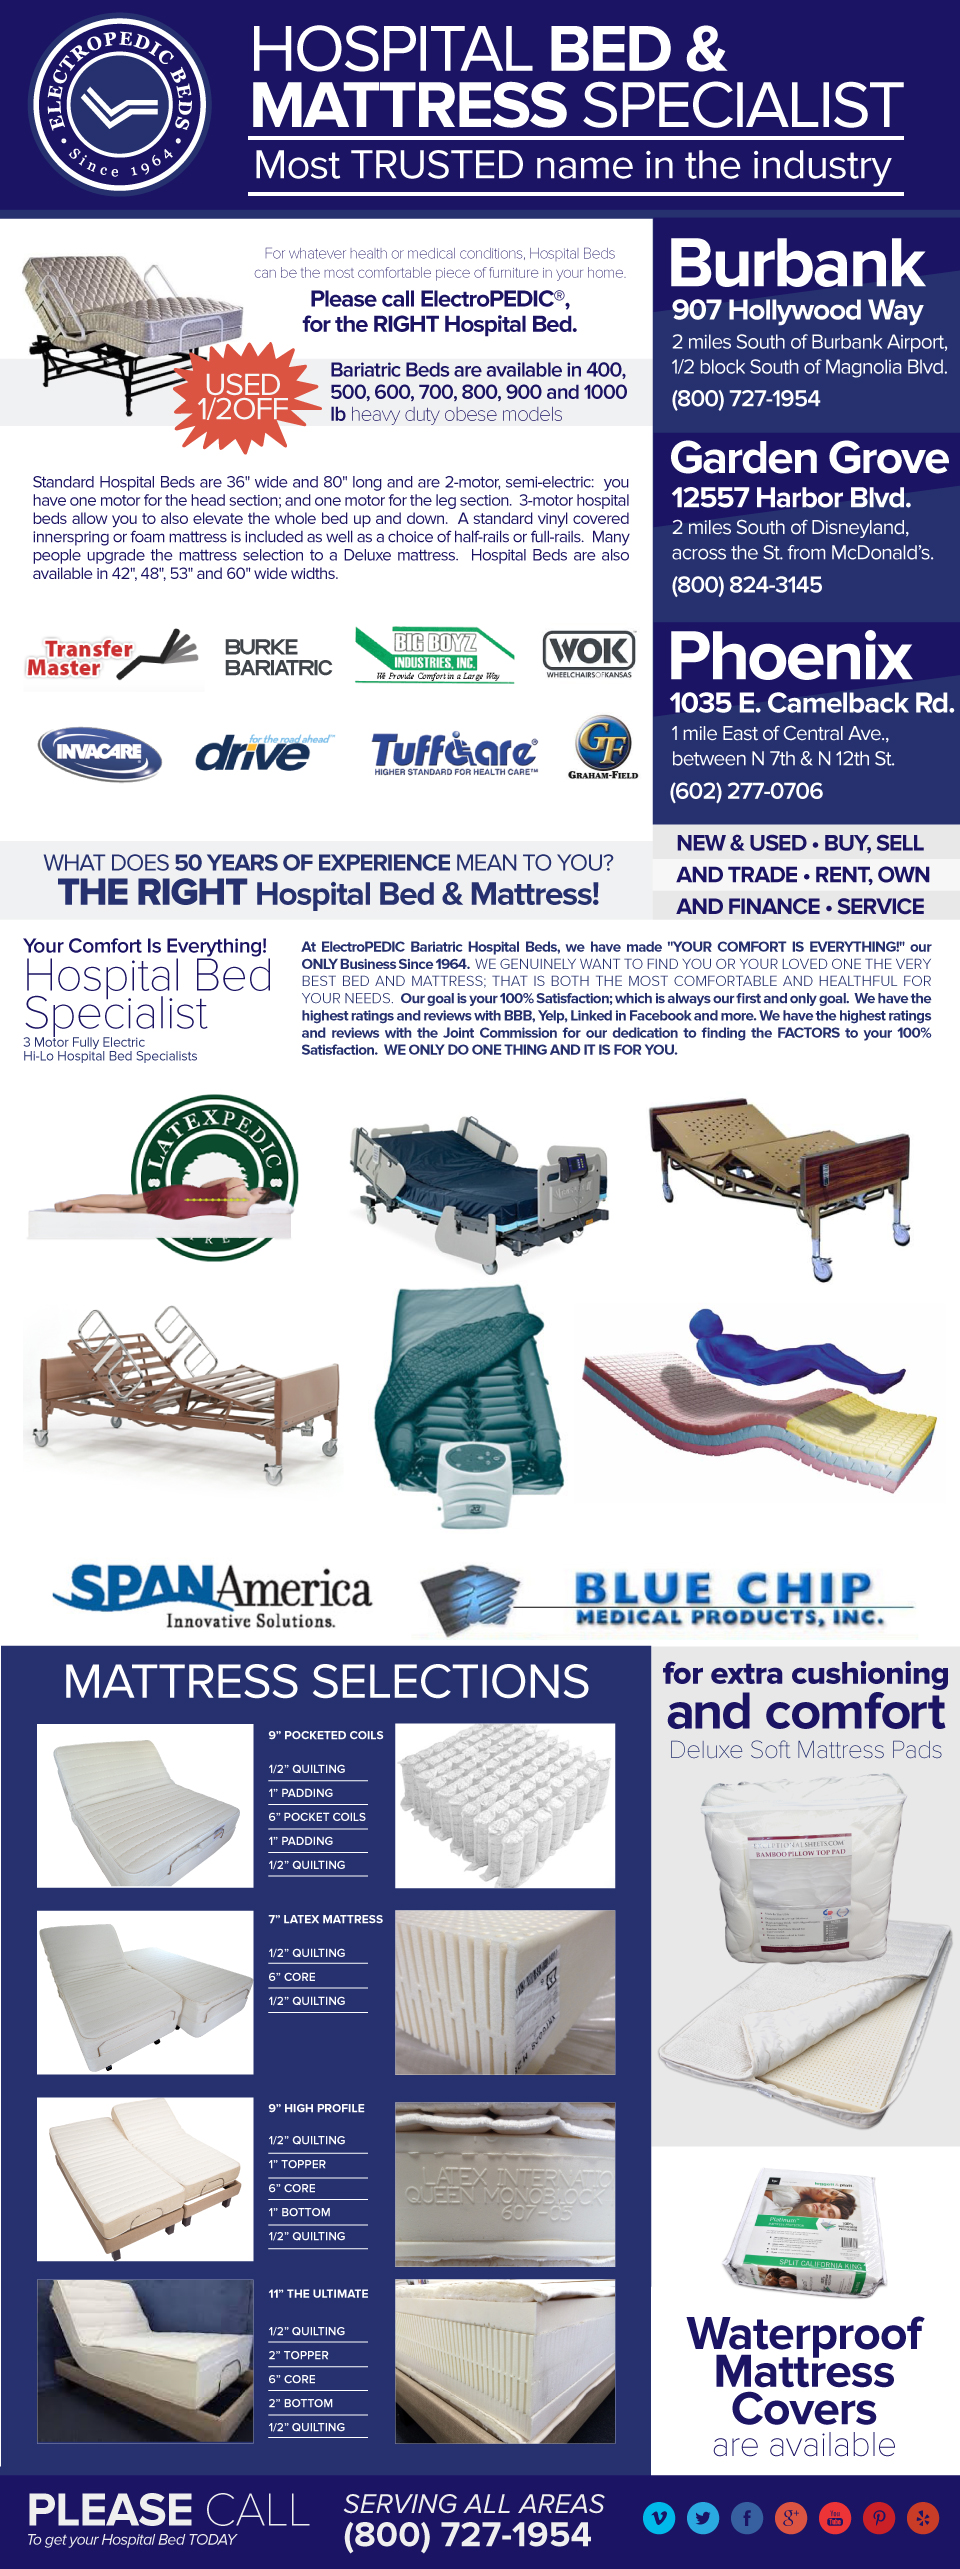 hospital bed manufacturers adjustablebed factory mattress